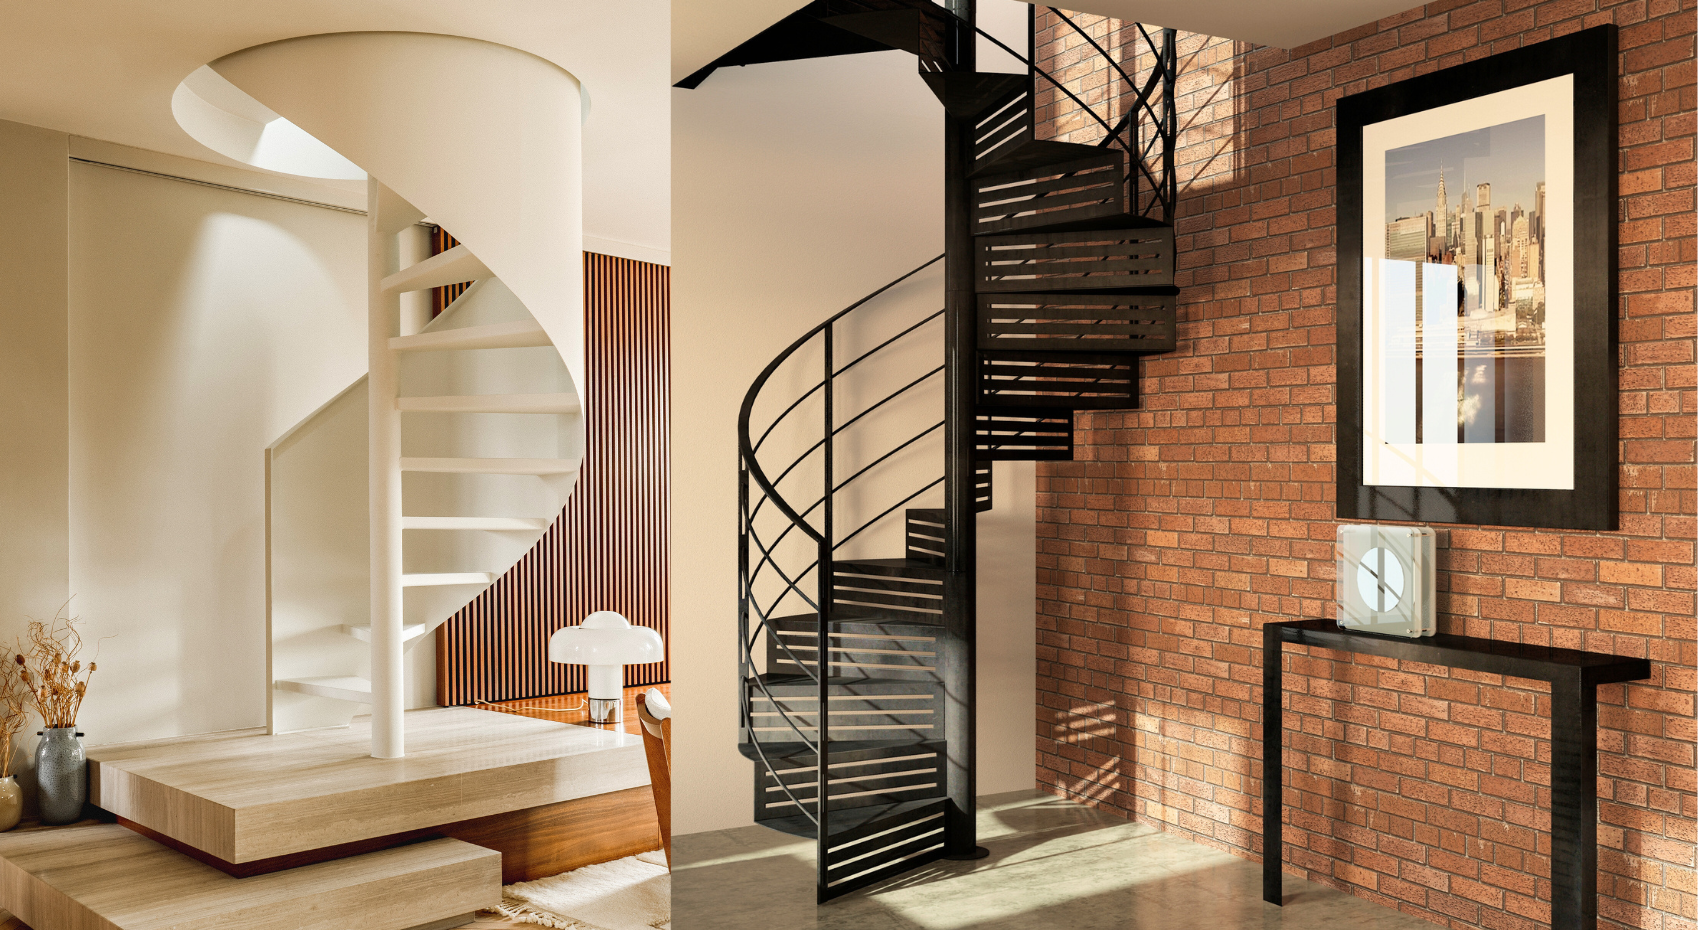 Choisissez un escalier en colimaçon sur mesure pour votre intérieur